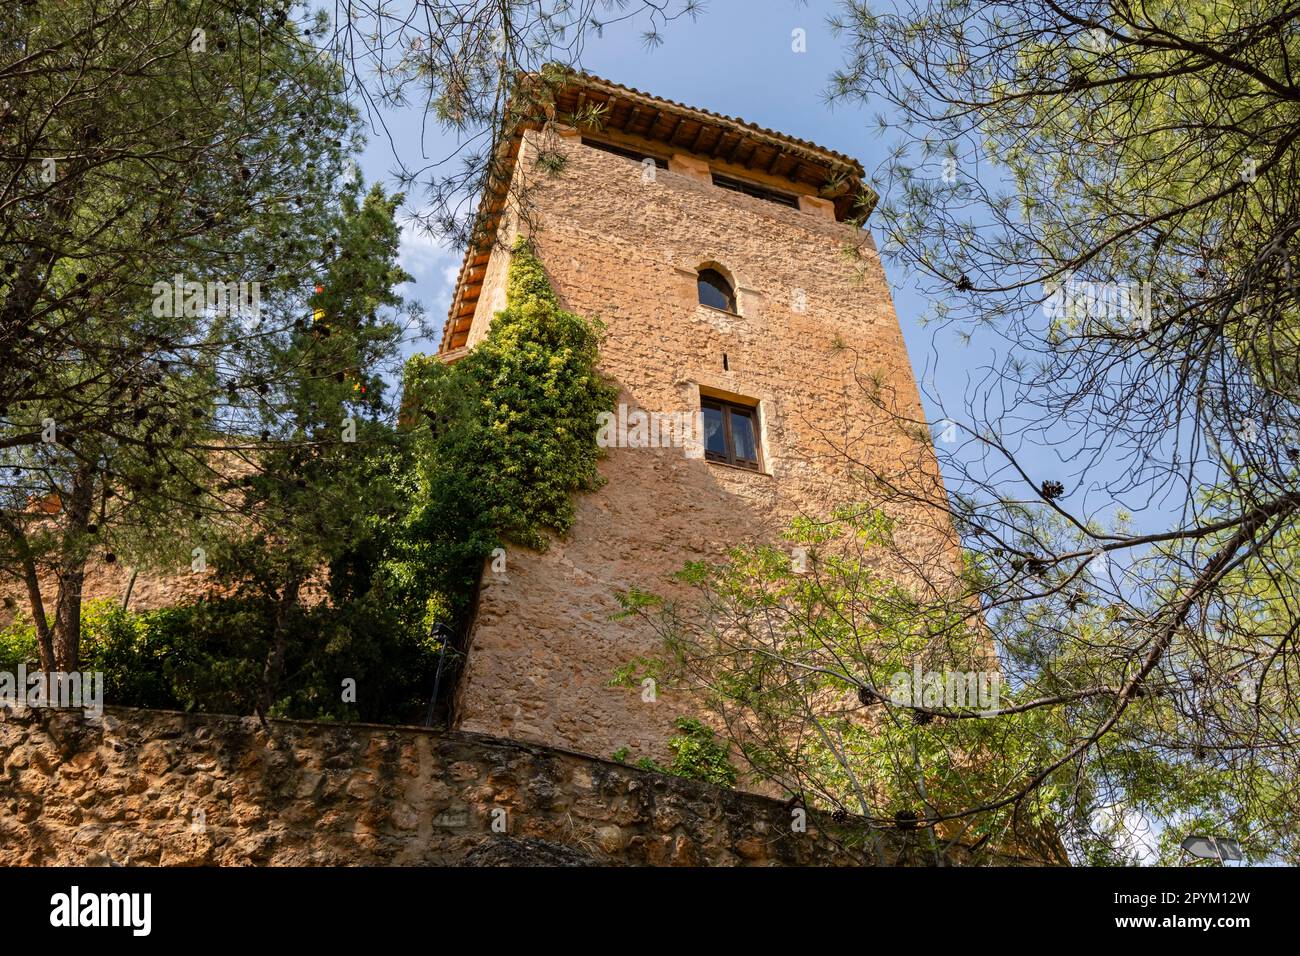 castillo del siglo XI, Hotel en Arcos de Jalón, Somaén, valle del rio Jalon,  Soria,  comunidad autónoma de Castilla y León, Spain, Europe Stock Photo